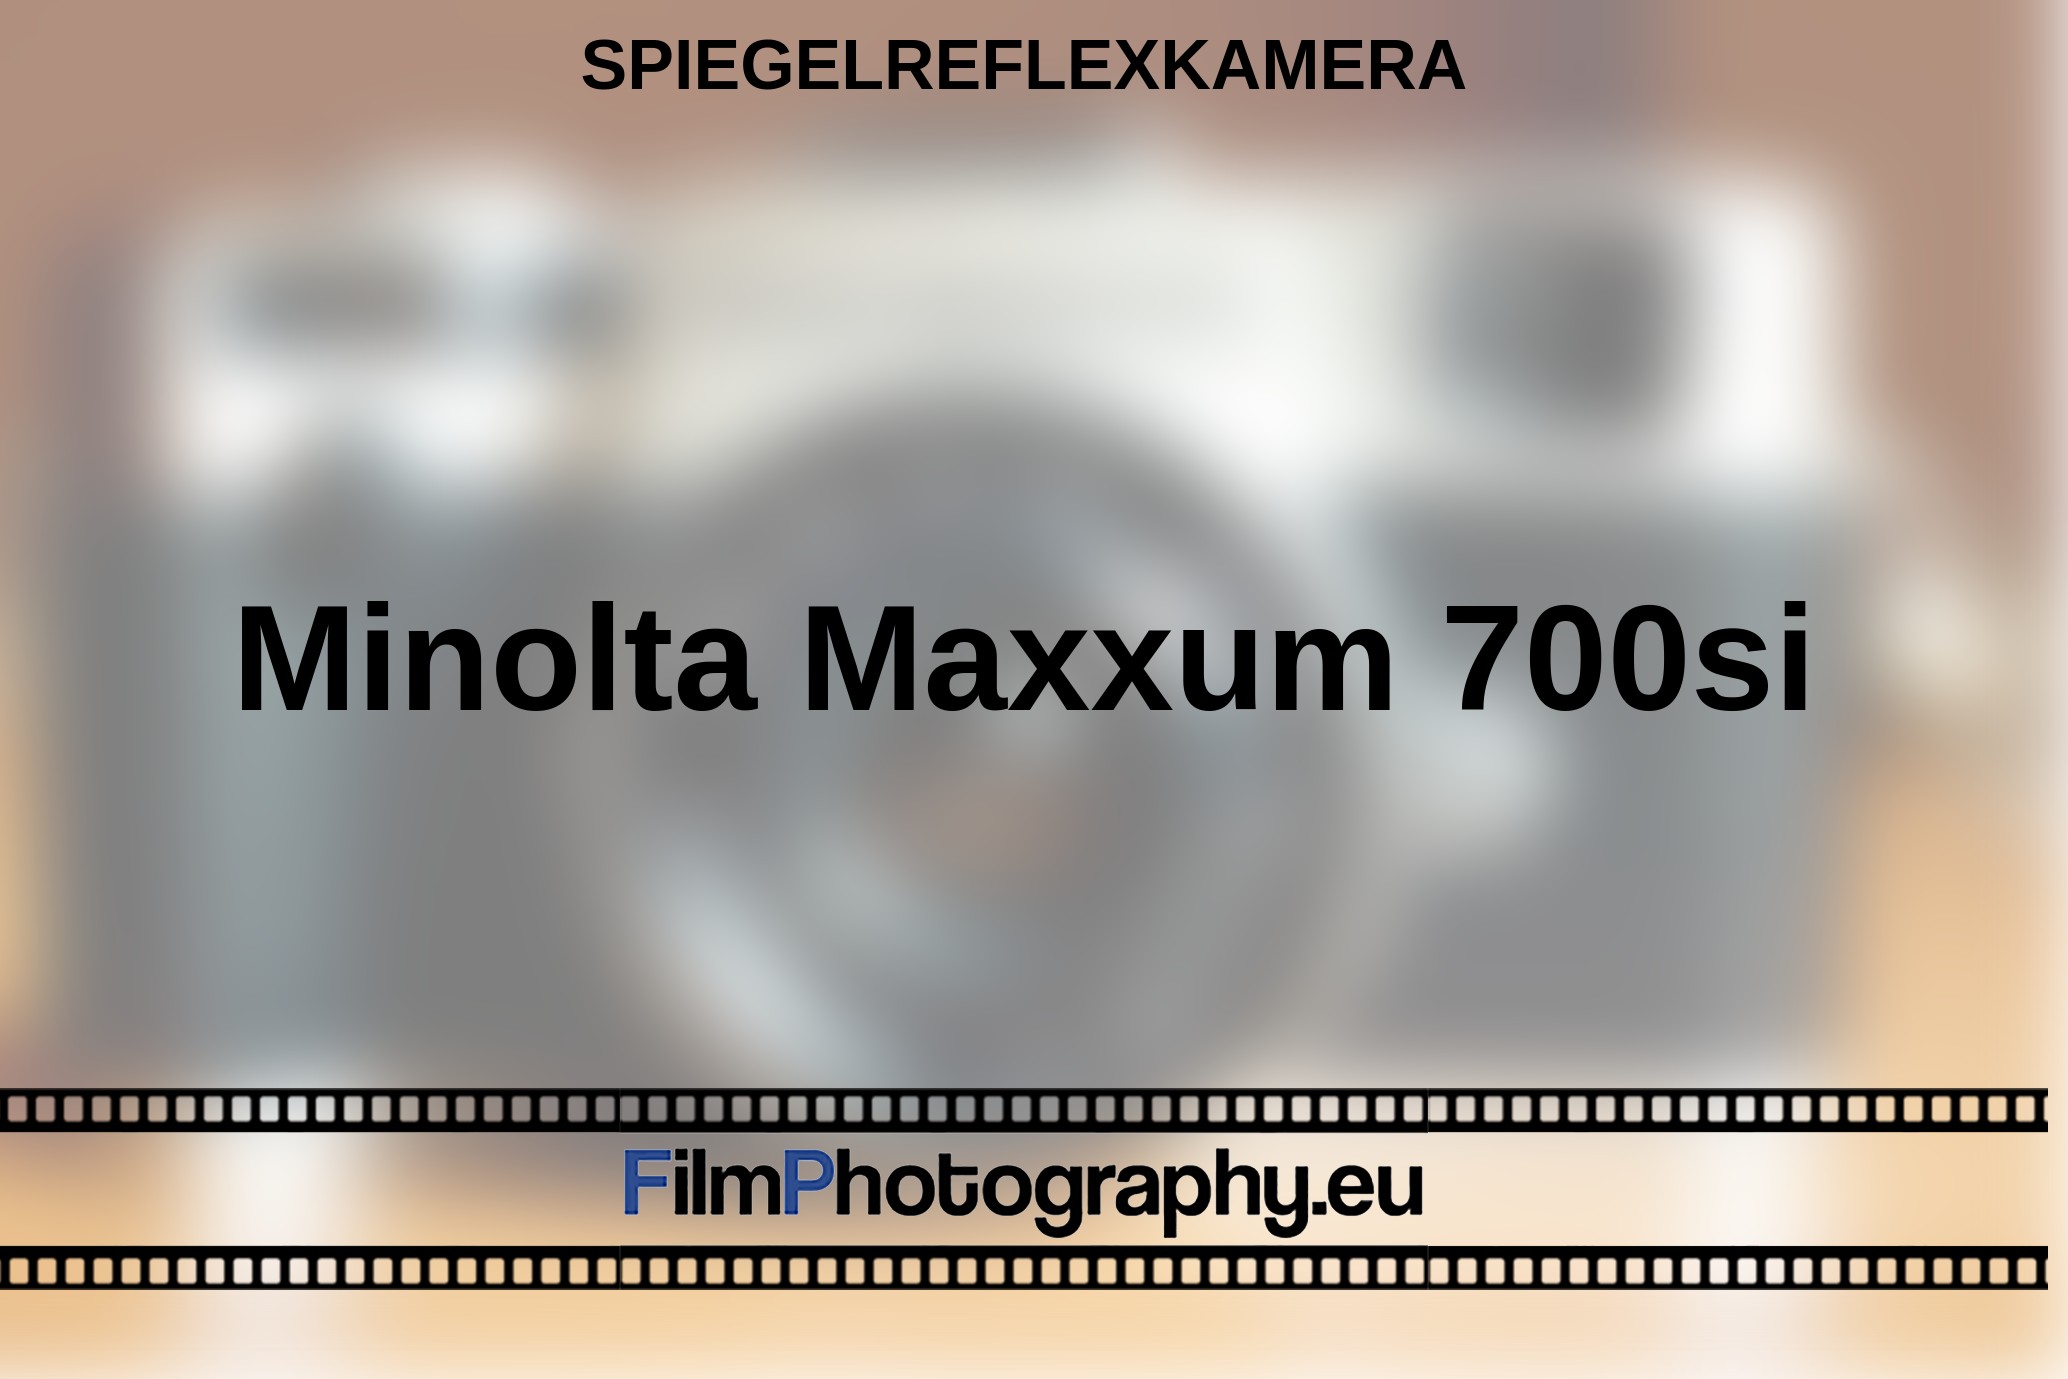 Minolta-Maxxum-700si-Spiegelreflexkamera-bnv.jpg